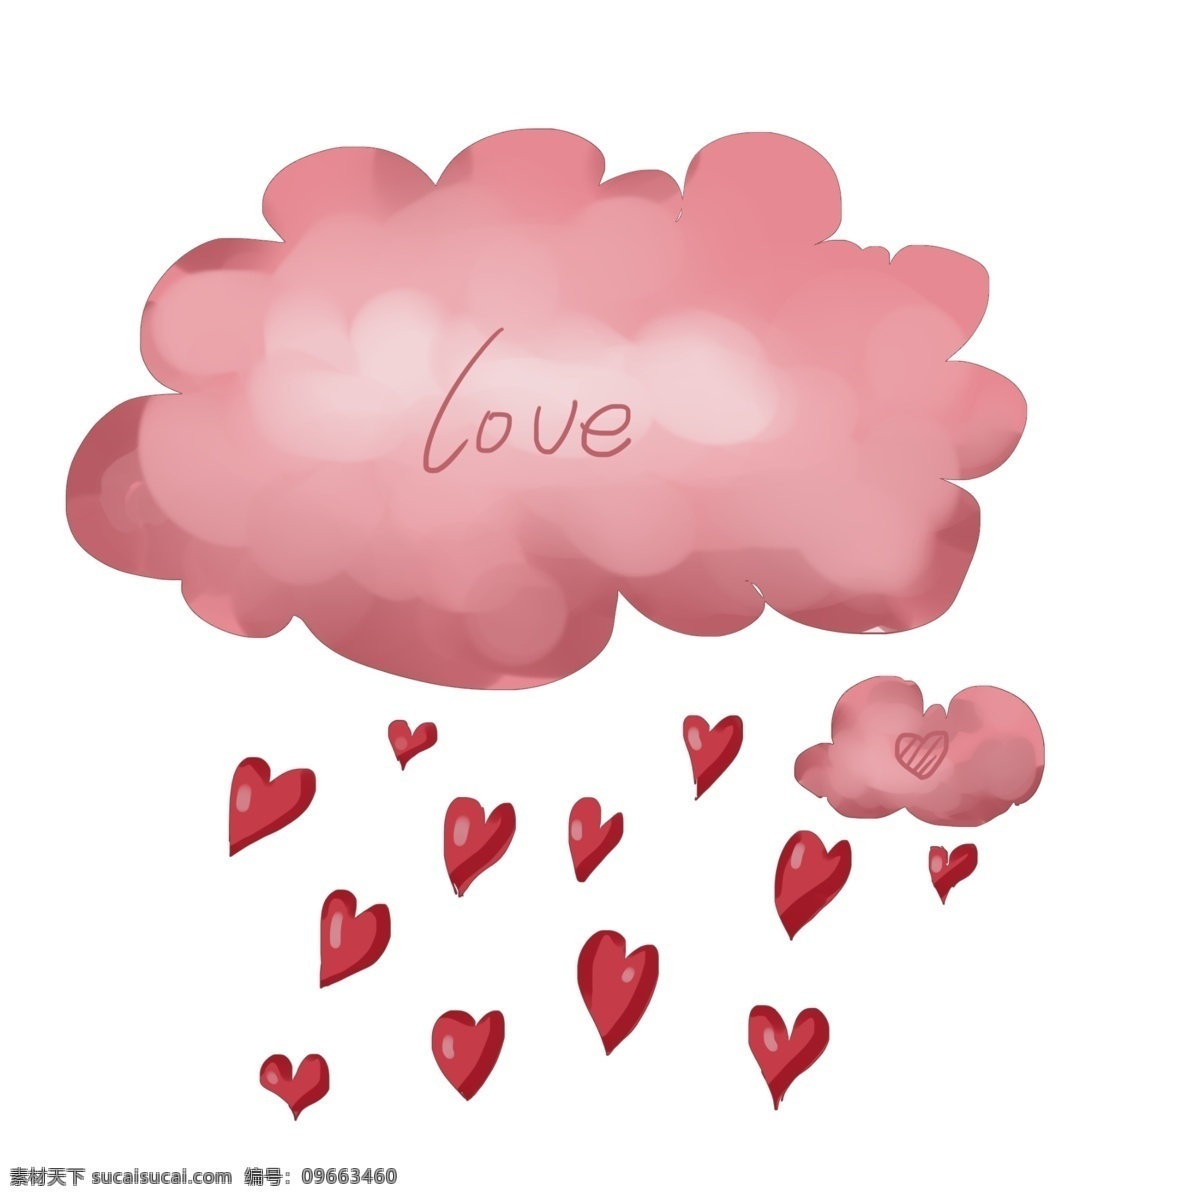 卡通 红色 爱 心雨 插画 爱情 情人节装饰 红心 桃心 卡通云朵 卡通爱心雨 红色云朵 下心形雨